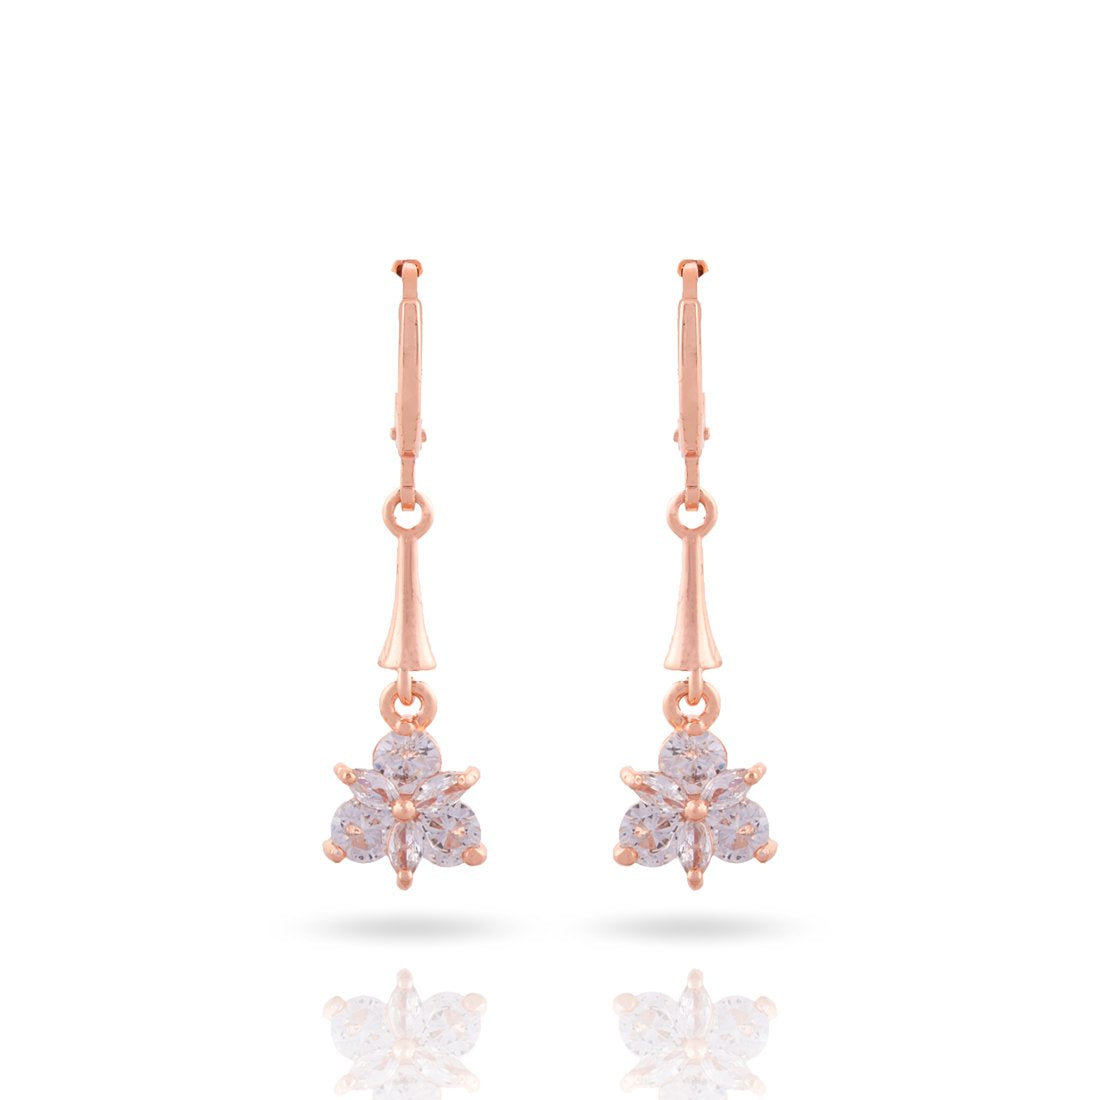 Meira Jewellery CZ Studded Triangle Hoop Earring for Women & Girls